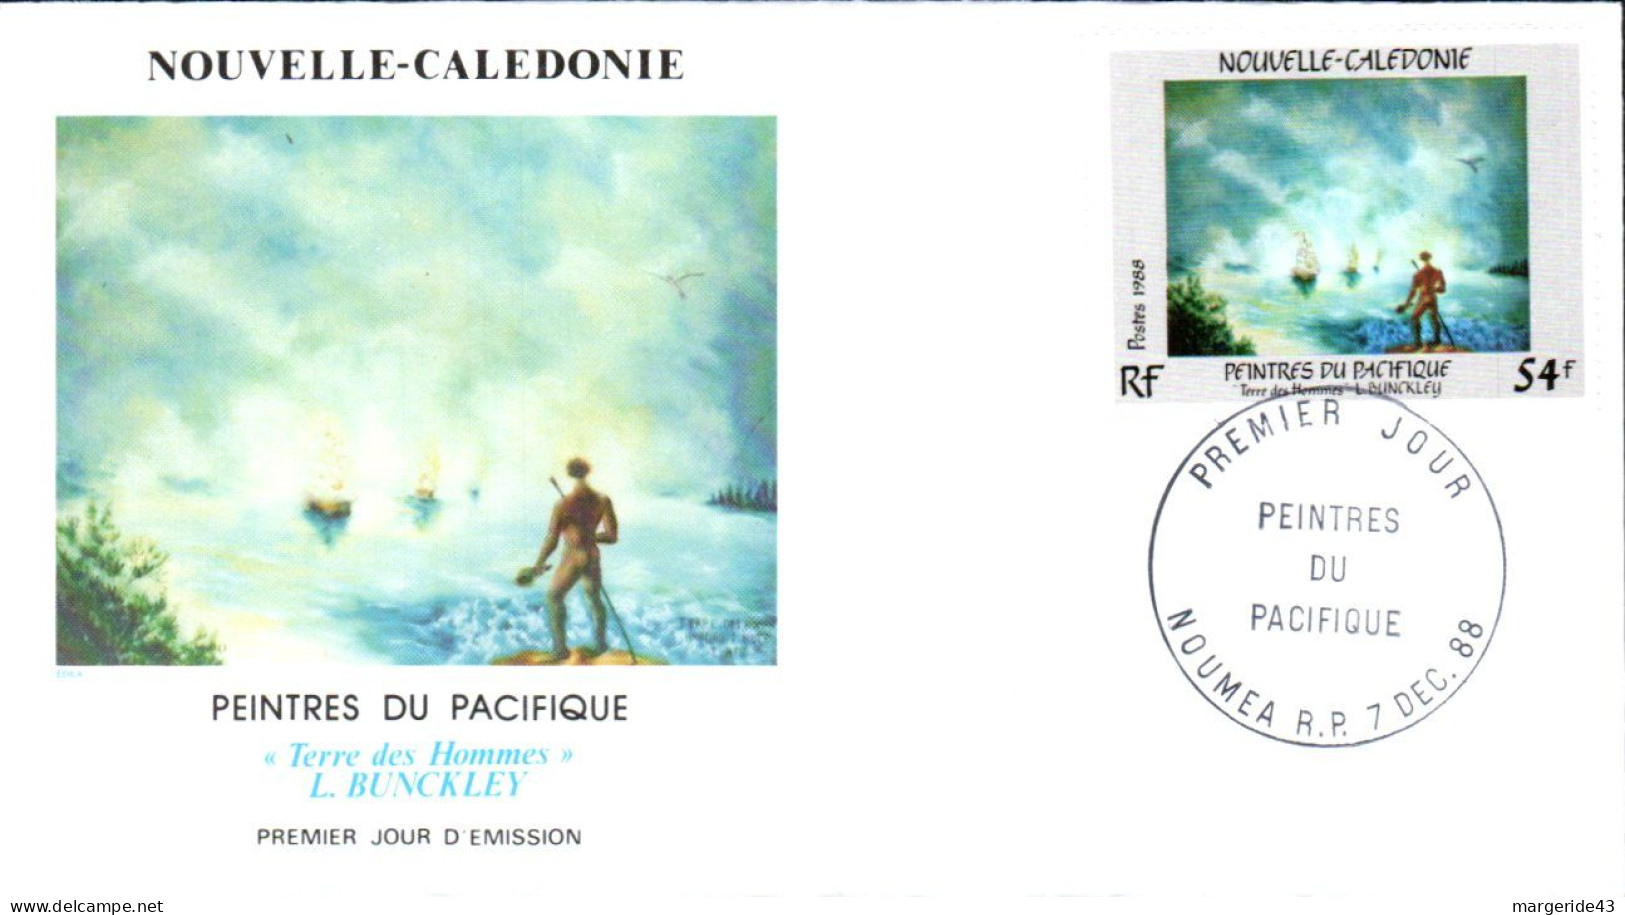 NOUVELLE CALEDONIE FDC 1988 PEINTRES DU PACIFIQUE - FDC